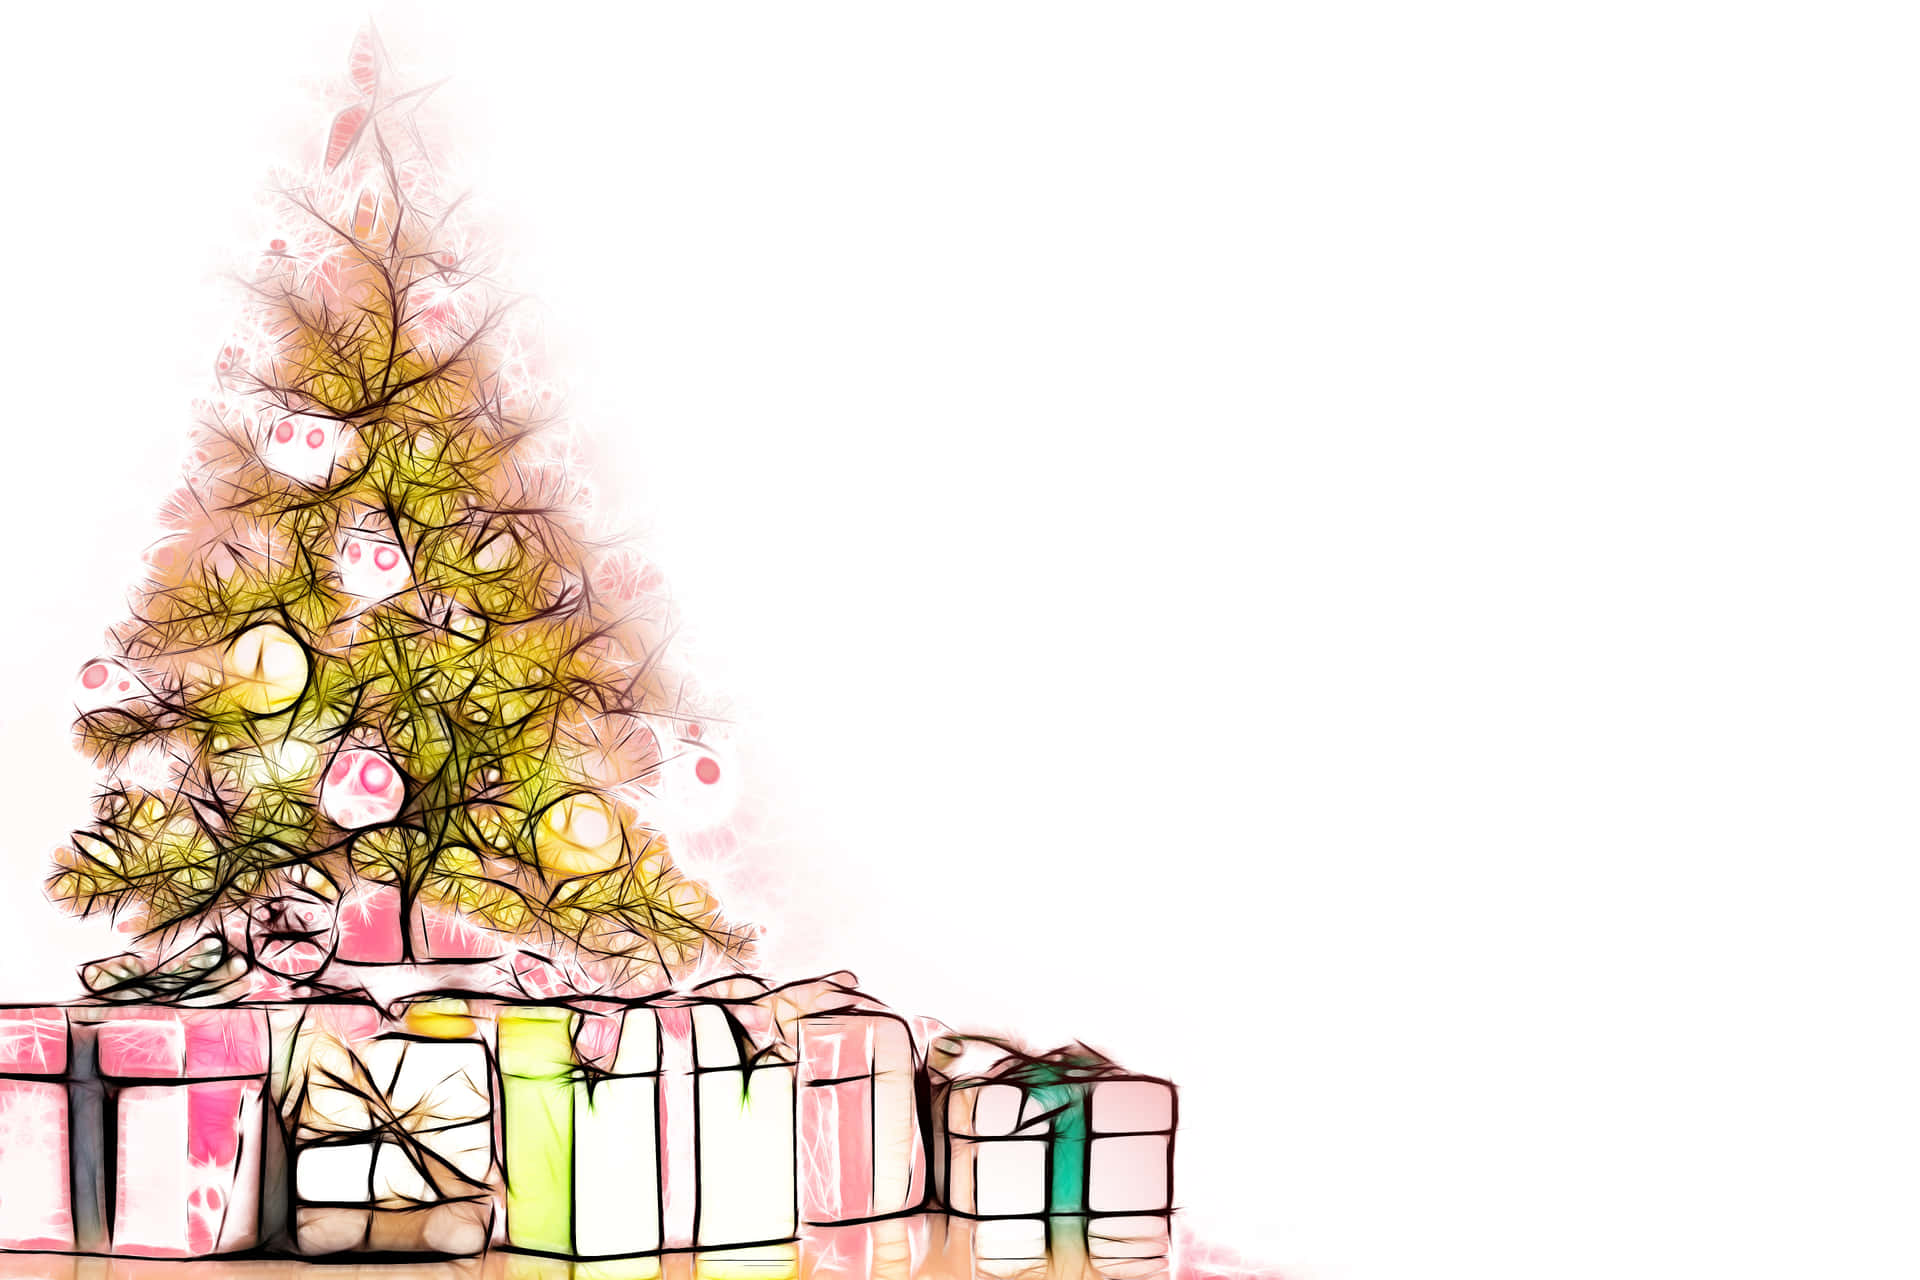 En tegning af et juletræ med gaver omkring det